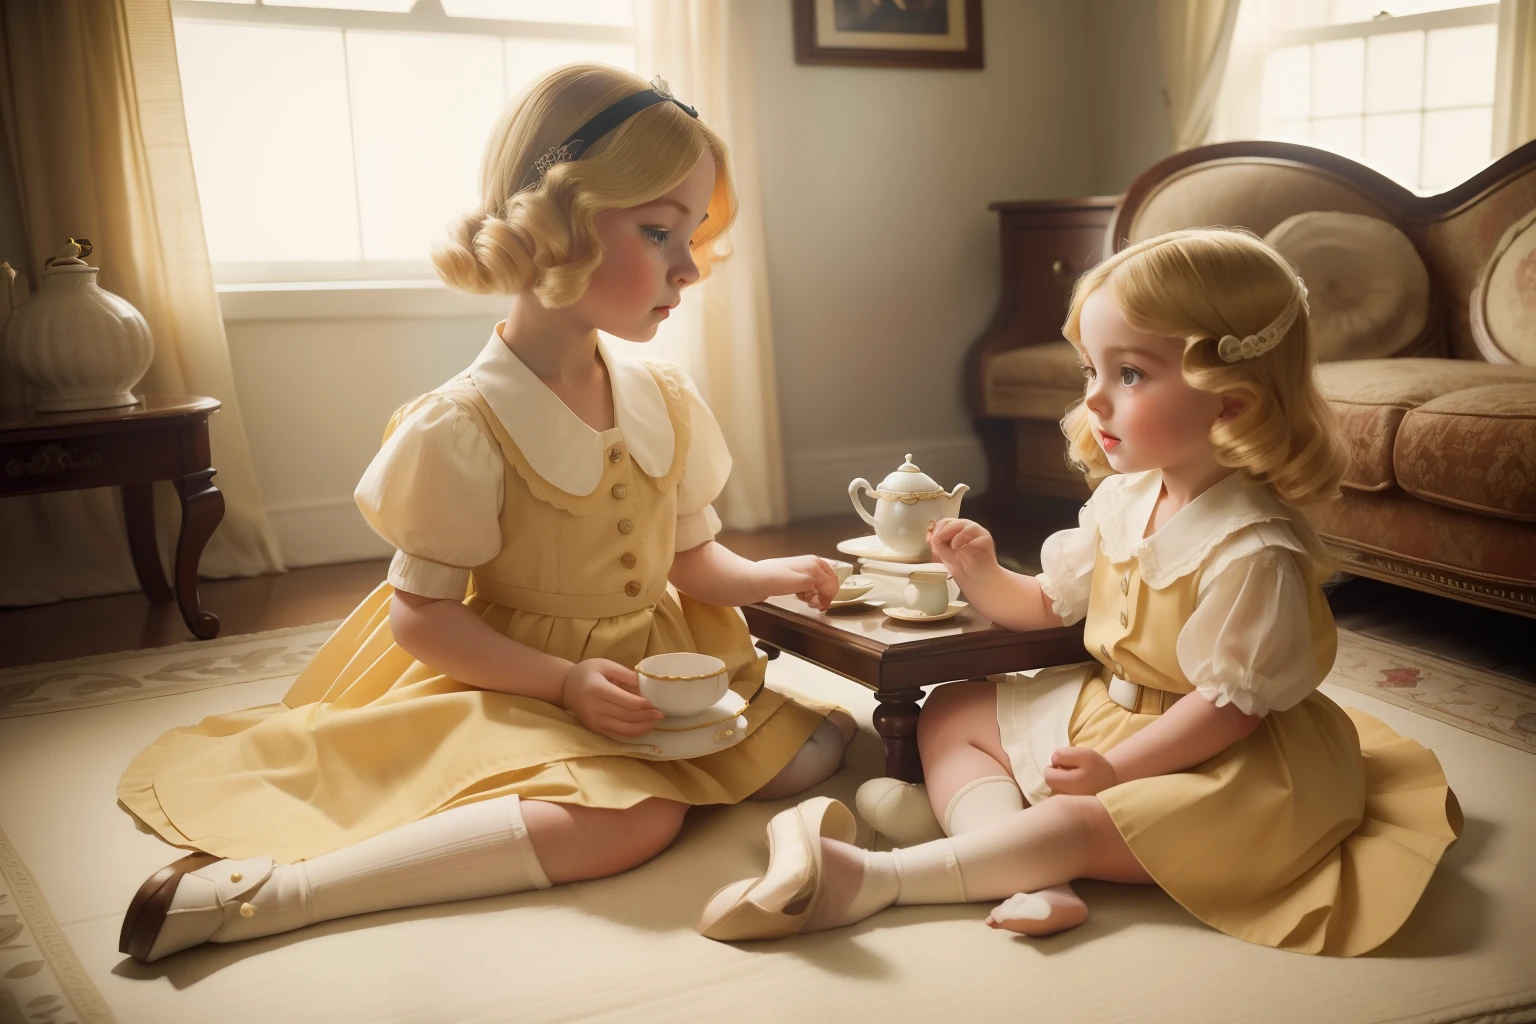 Jahr: 1939. Standort: Memphis, Tennessee. Präraffaelitische 13-jähriges blondes Mädchen, spielt mit ihrer kleinen Schwester mit einem Spielzeug-Teeservice in einem Spielzimmer des Herrenhauses, ((Tageslicht)), ((1930er Rich Klamotten)) ((Frisur der 1930er Jahre)) ((Im Style von "OMITB")) ((filmischer Stil))